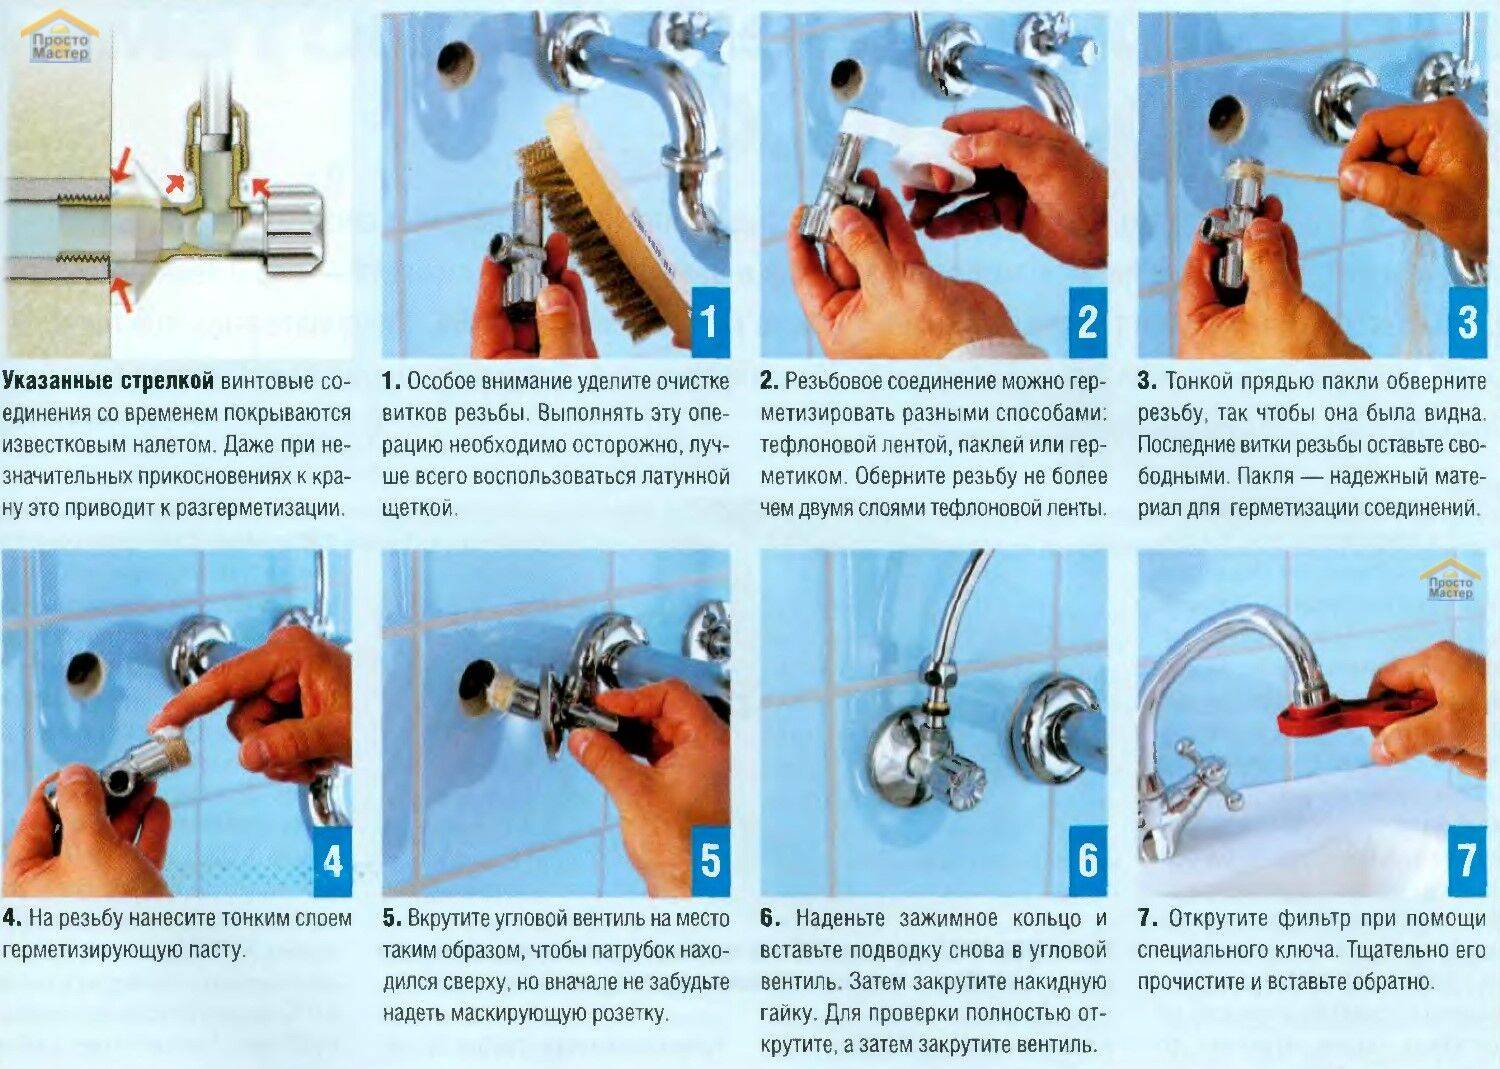 Процесс установки смесителя в ванной — изучаем развернуто